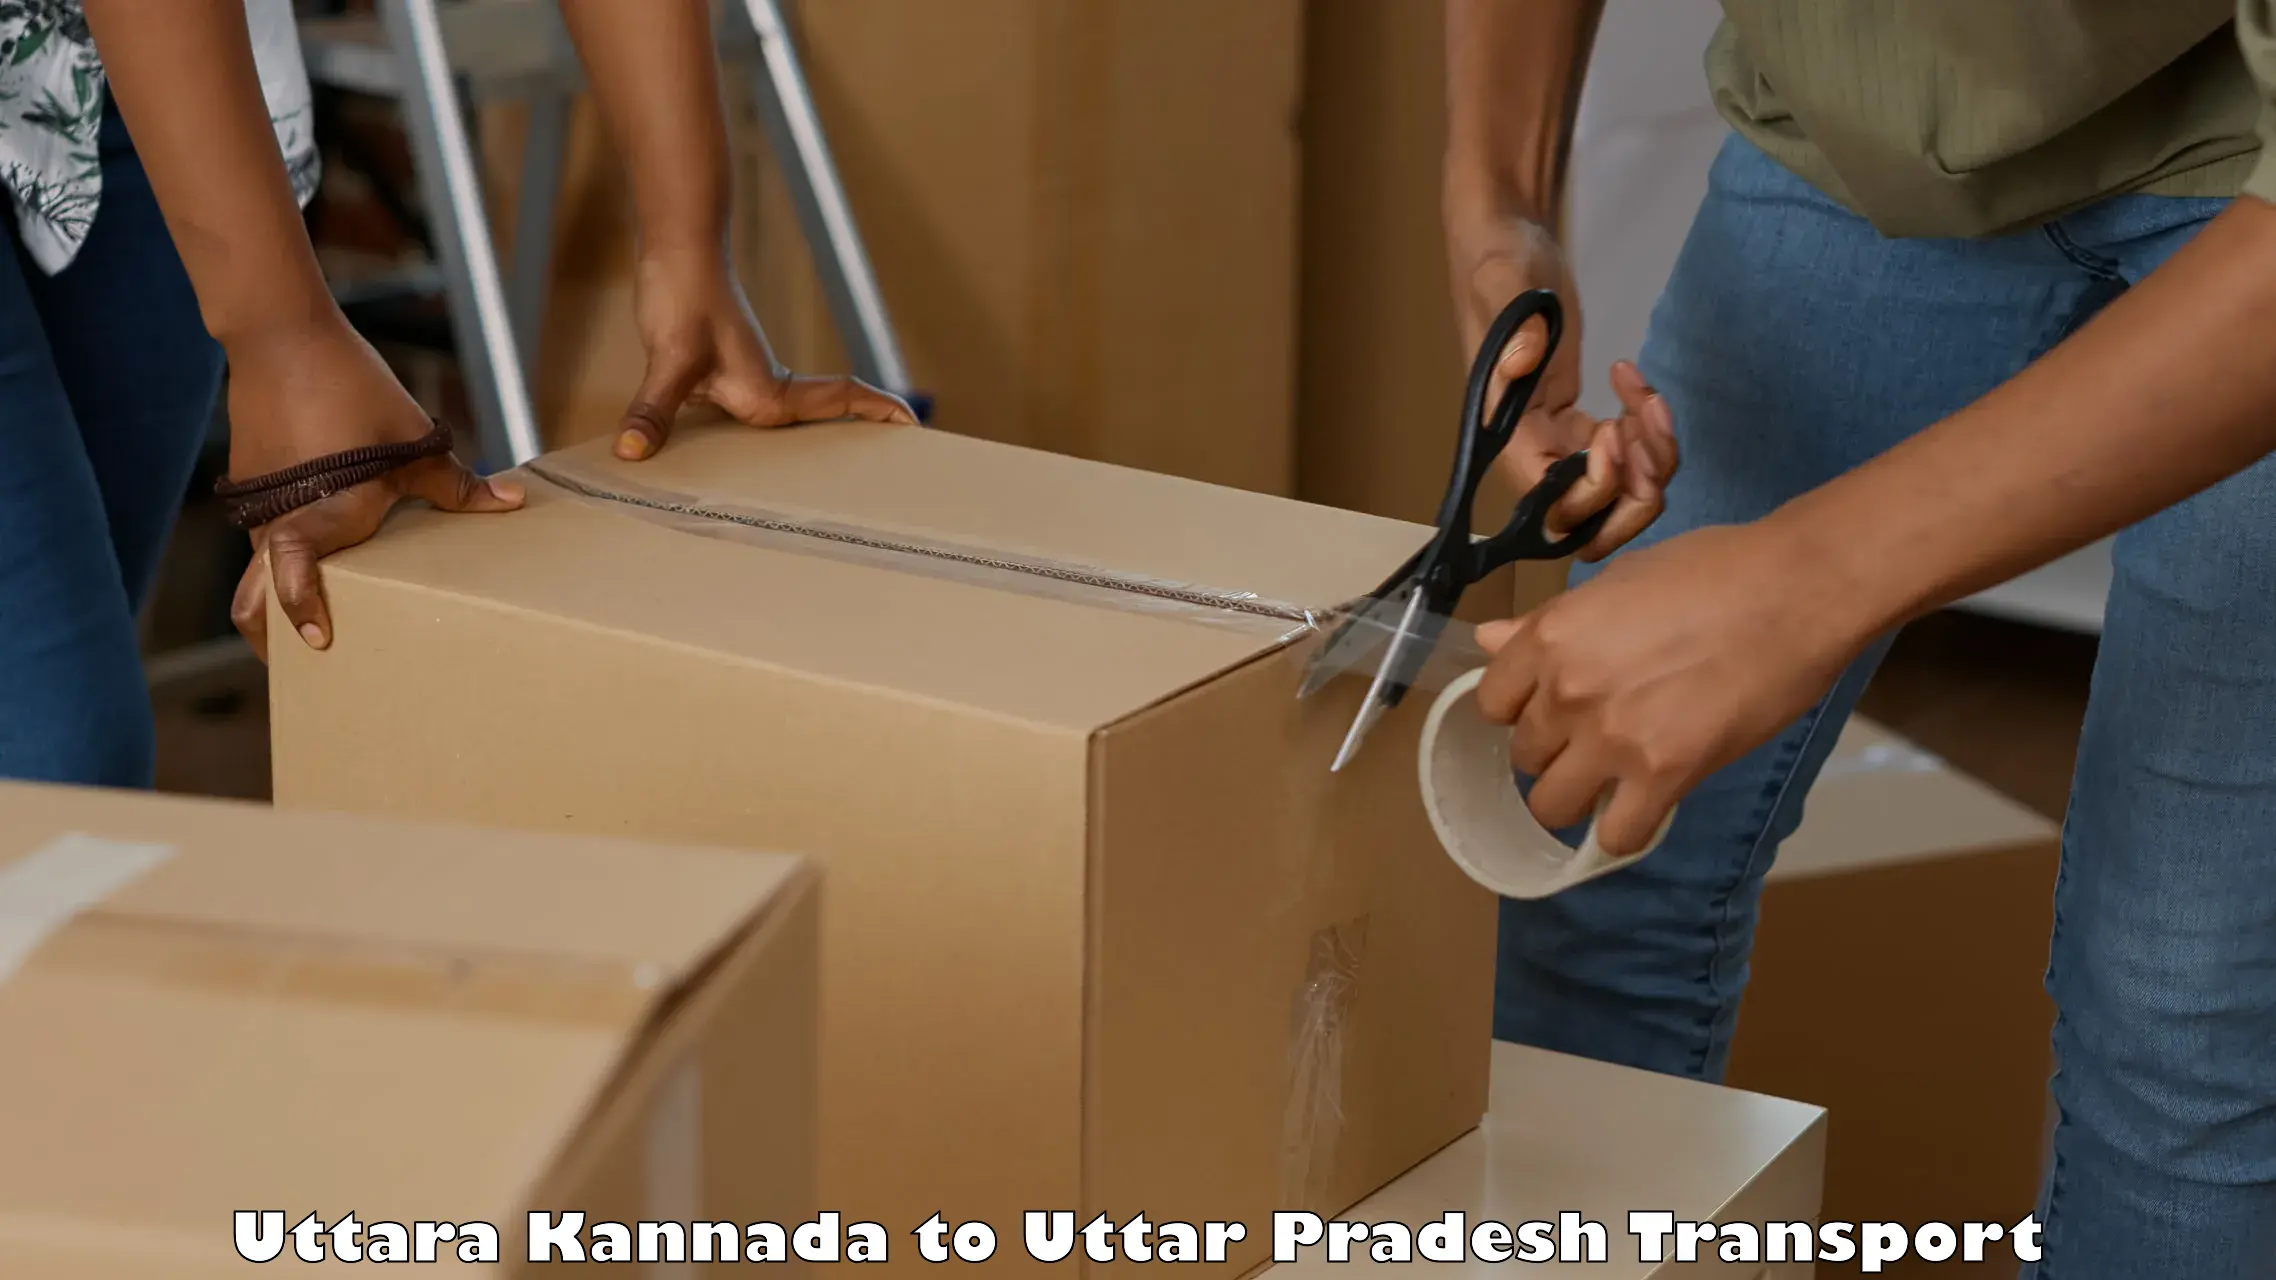 Shipping services Uttara Kannada to Karchhana